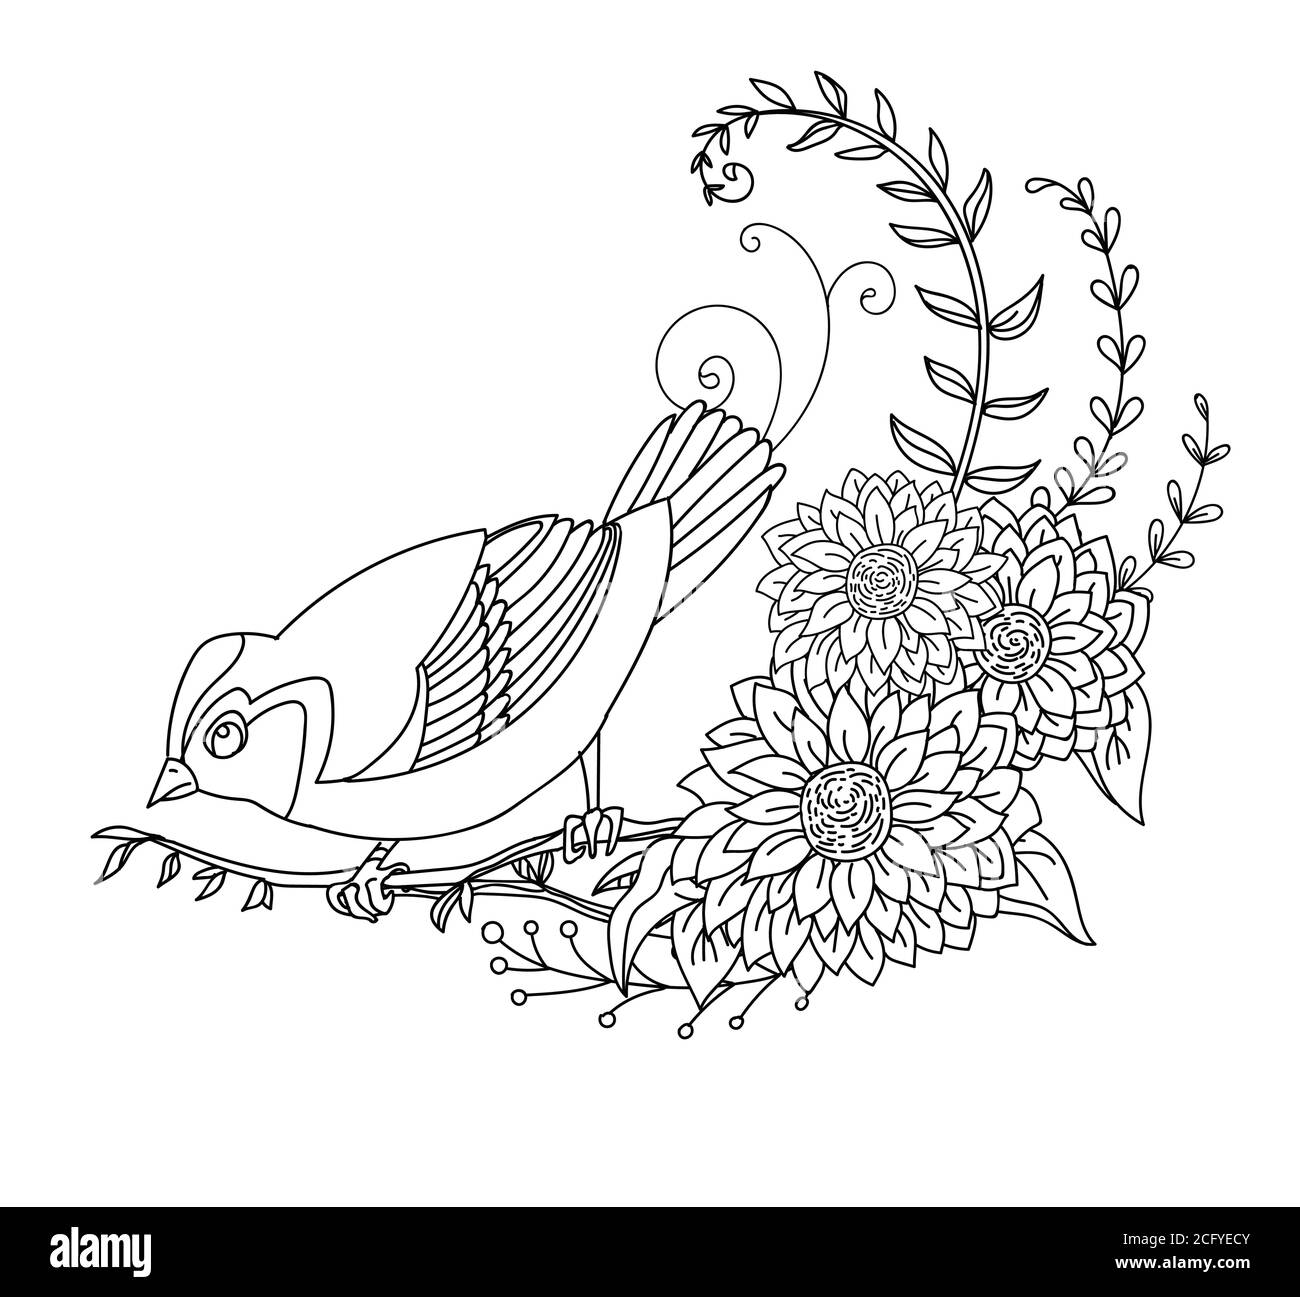 Contorno nero simpatico illustrazione uccello e fiori. Immagine vettoriale a disegno lineare isolata in bianco. Immagine monocromatica disegnata a mano vettoriale per libro da colorare Illustrazione Vettoriale